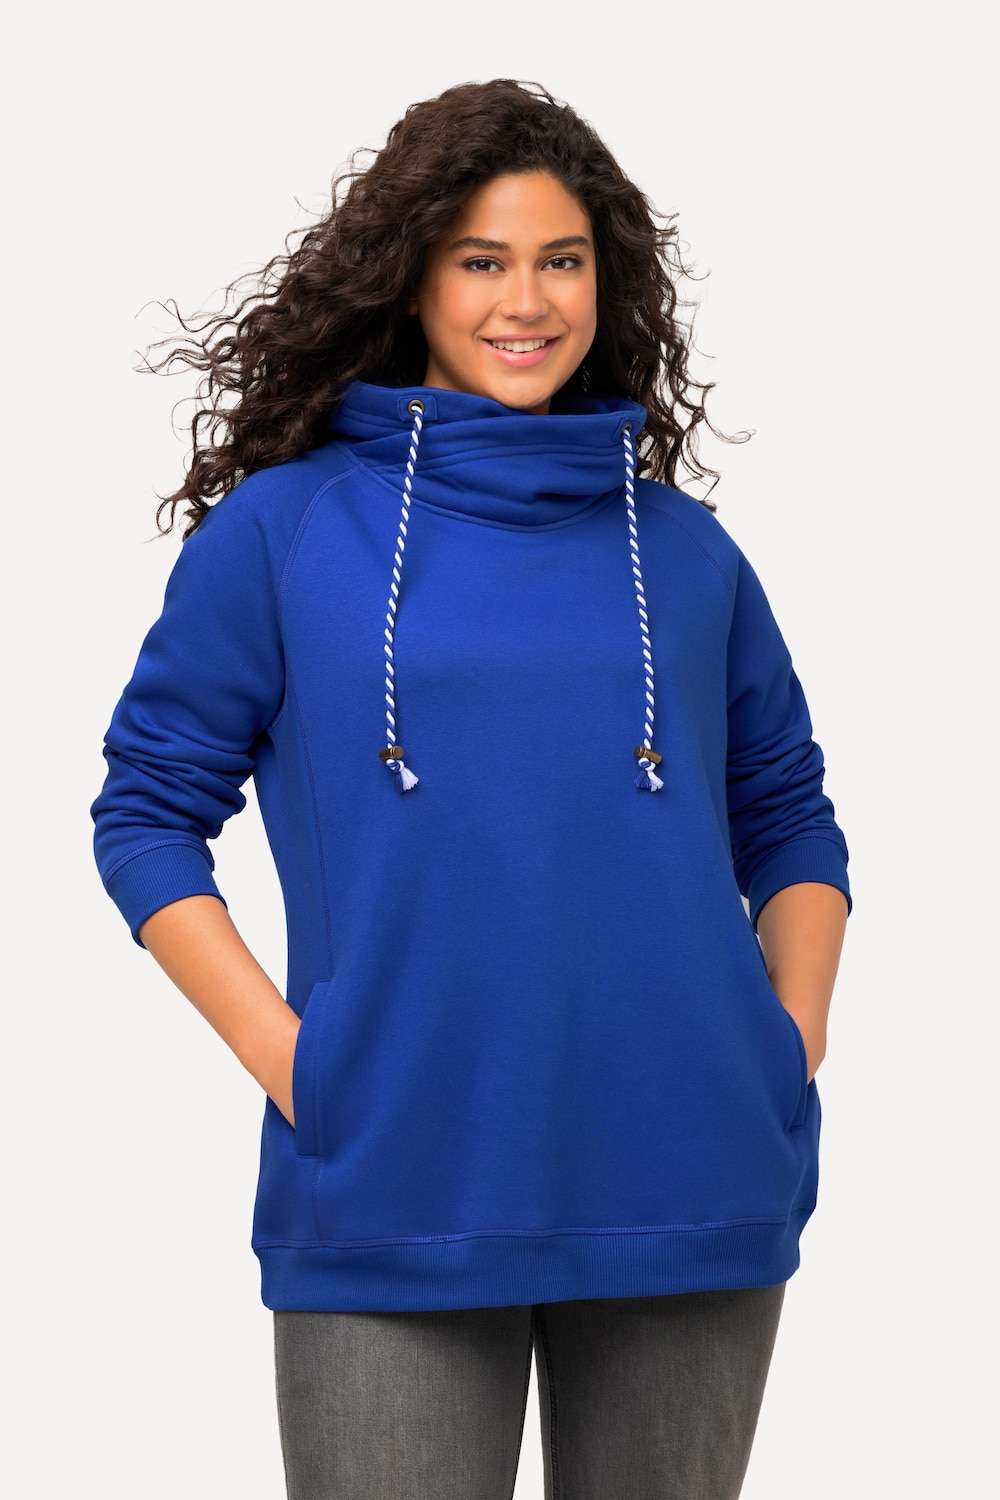 Grote Maten sweatshirt, Dames, blauw, Maat: 46/48, Katoen/Polyester, Ulla Popken